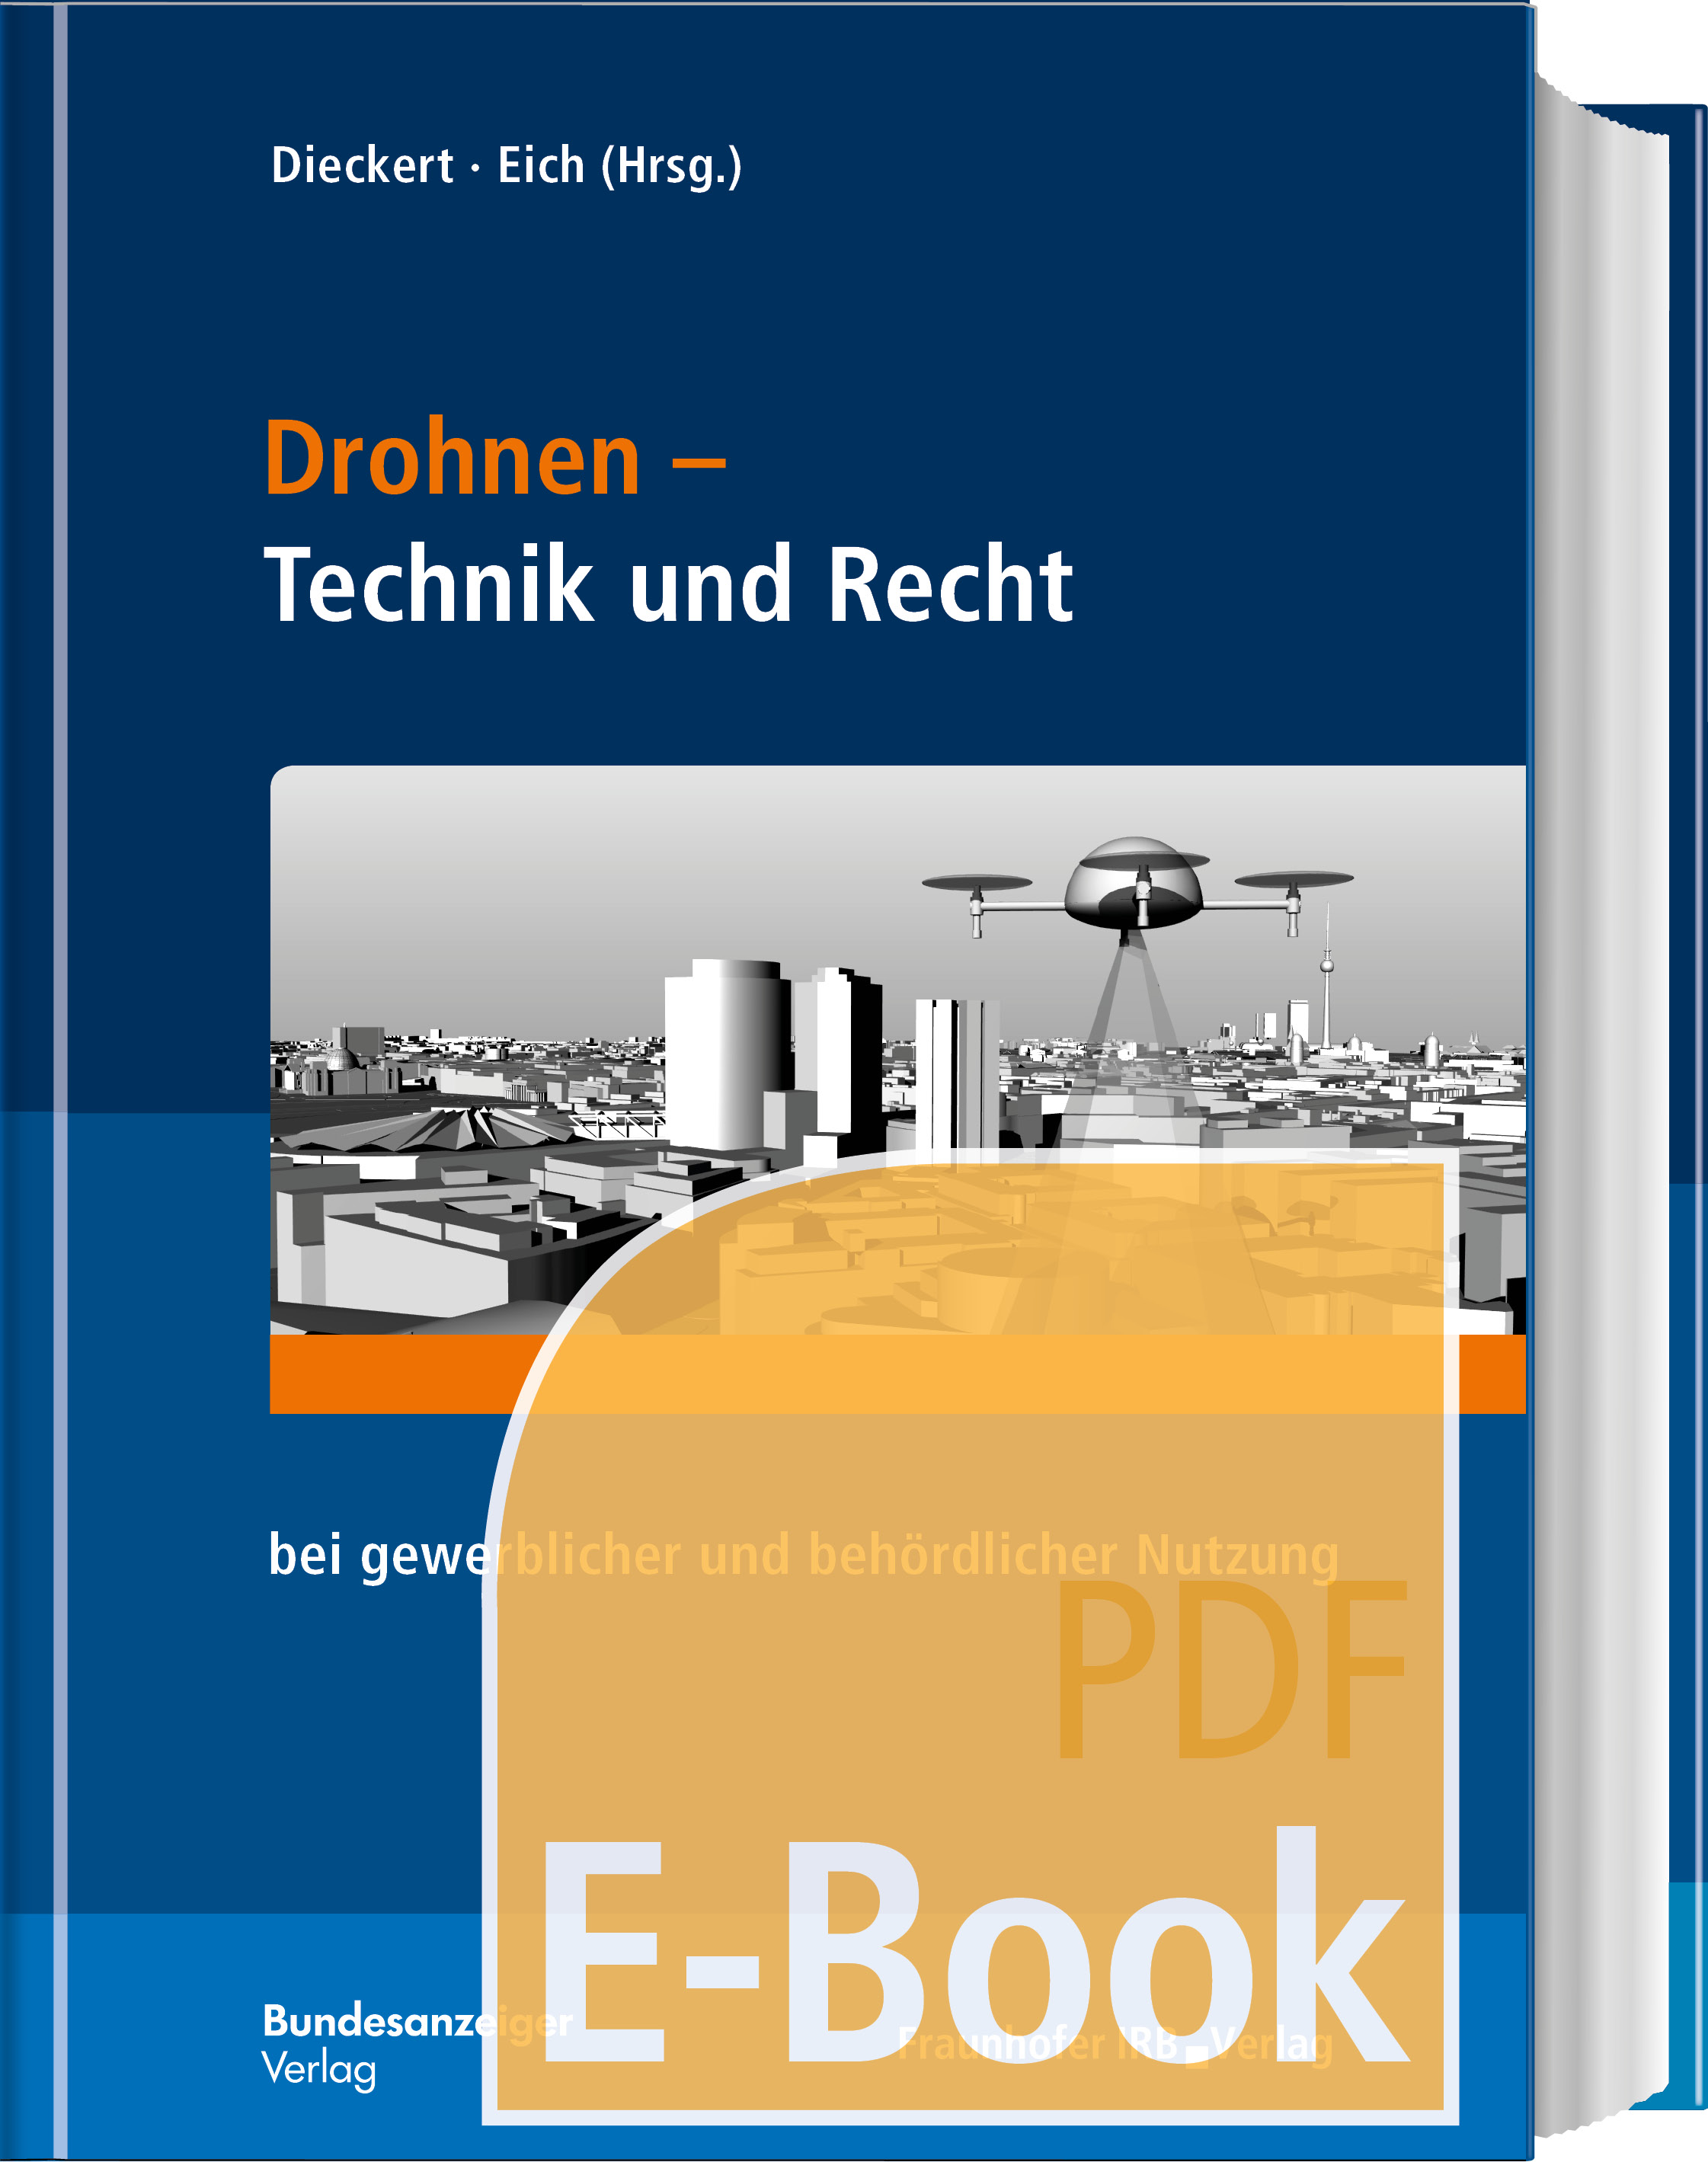 Drohnen - Technik und Recht (E-Book)